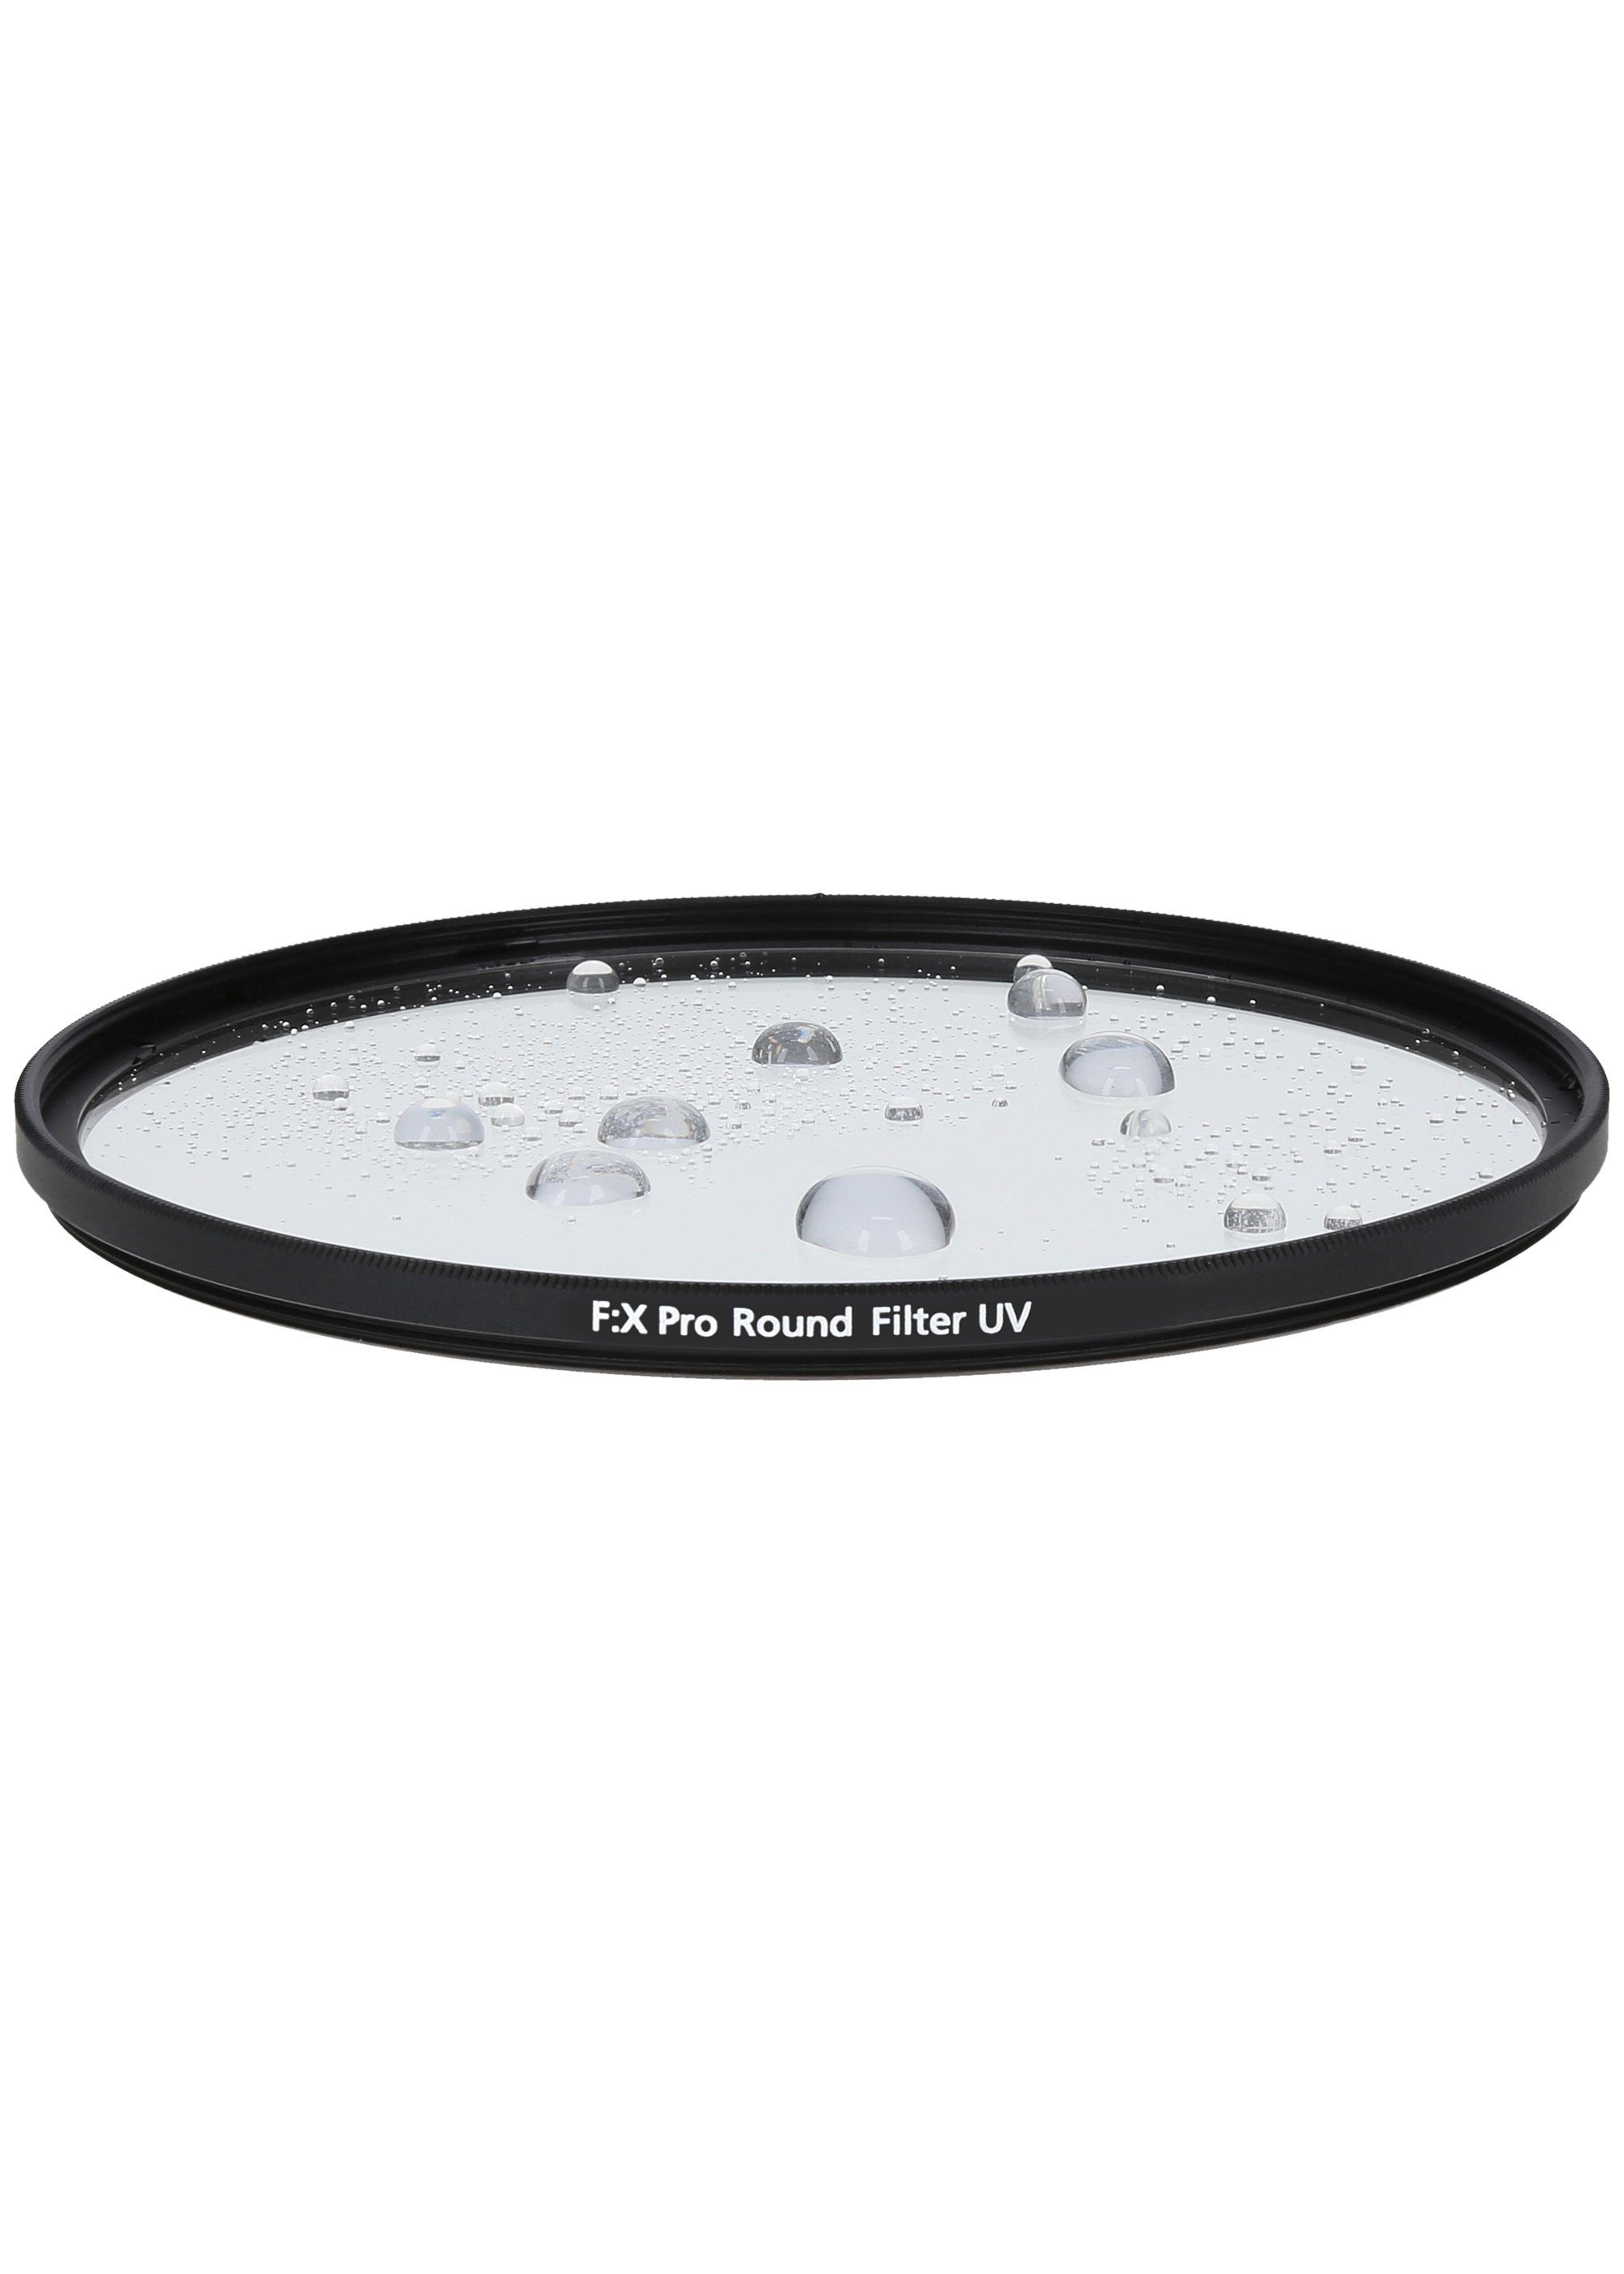 Rollei Pro Filter robustem Rollei Objektivzubehör 67 UV Gorilla-Glas) mm F:X (aus